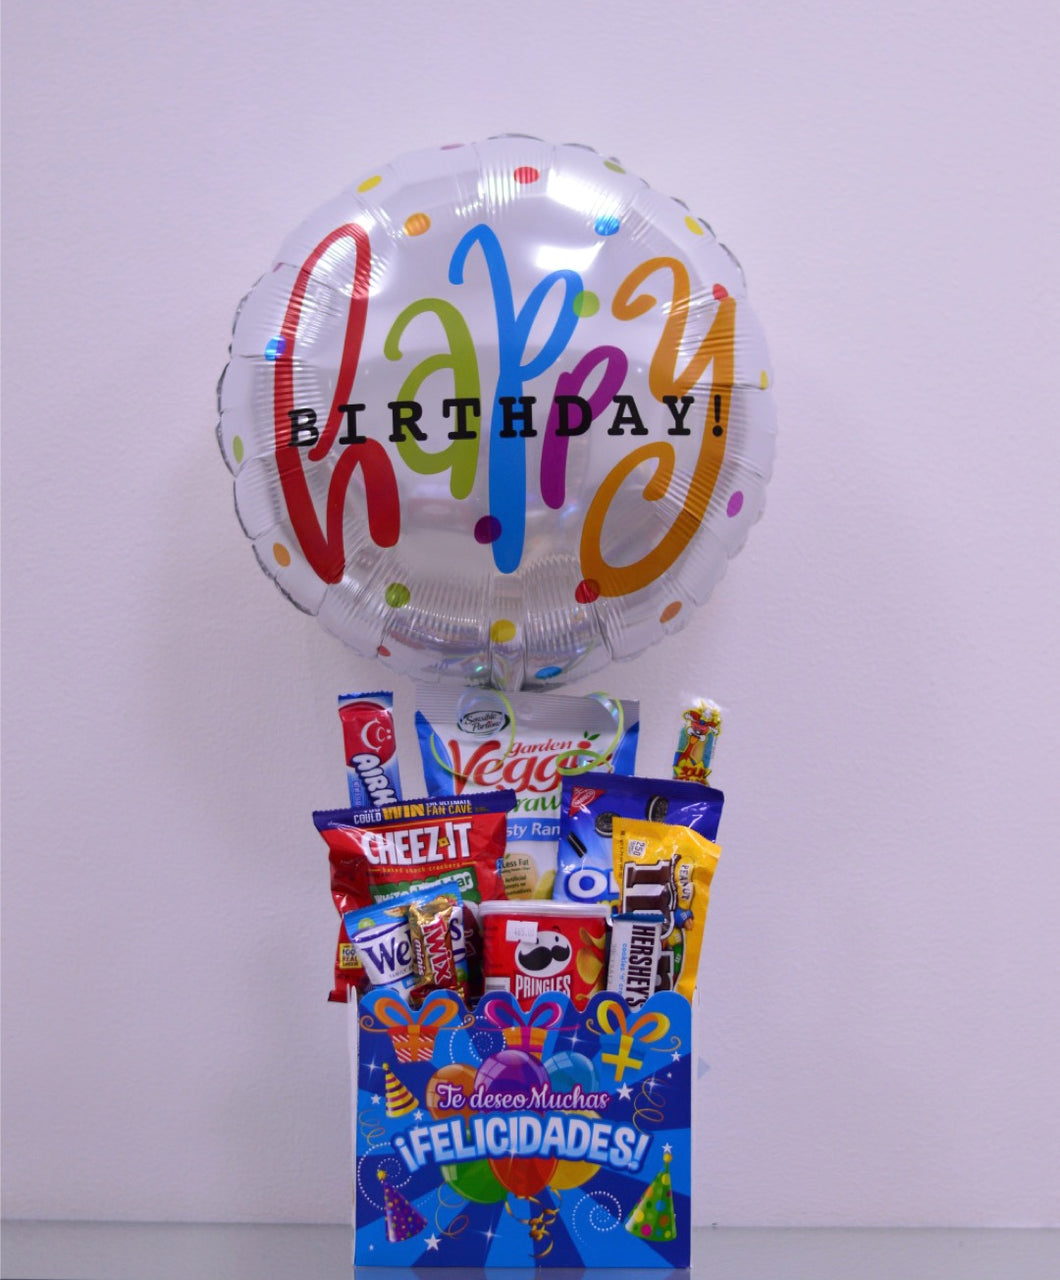 Arreglo de regalo caja grande con dulces y chocolate americano con globo grande, perfecto para desear un feliz cumpleanos. Puede ser el regalo ideal para tu esposo, novio o amigo.